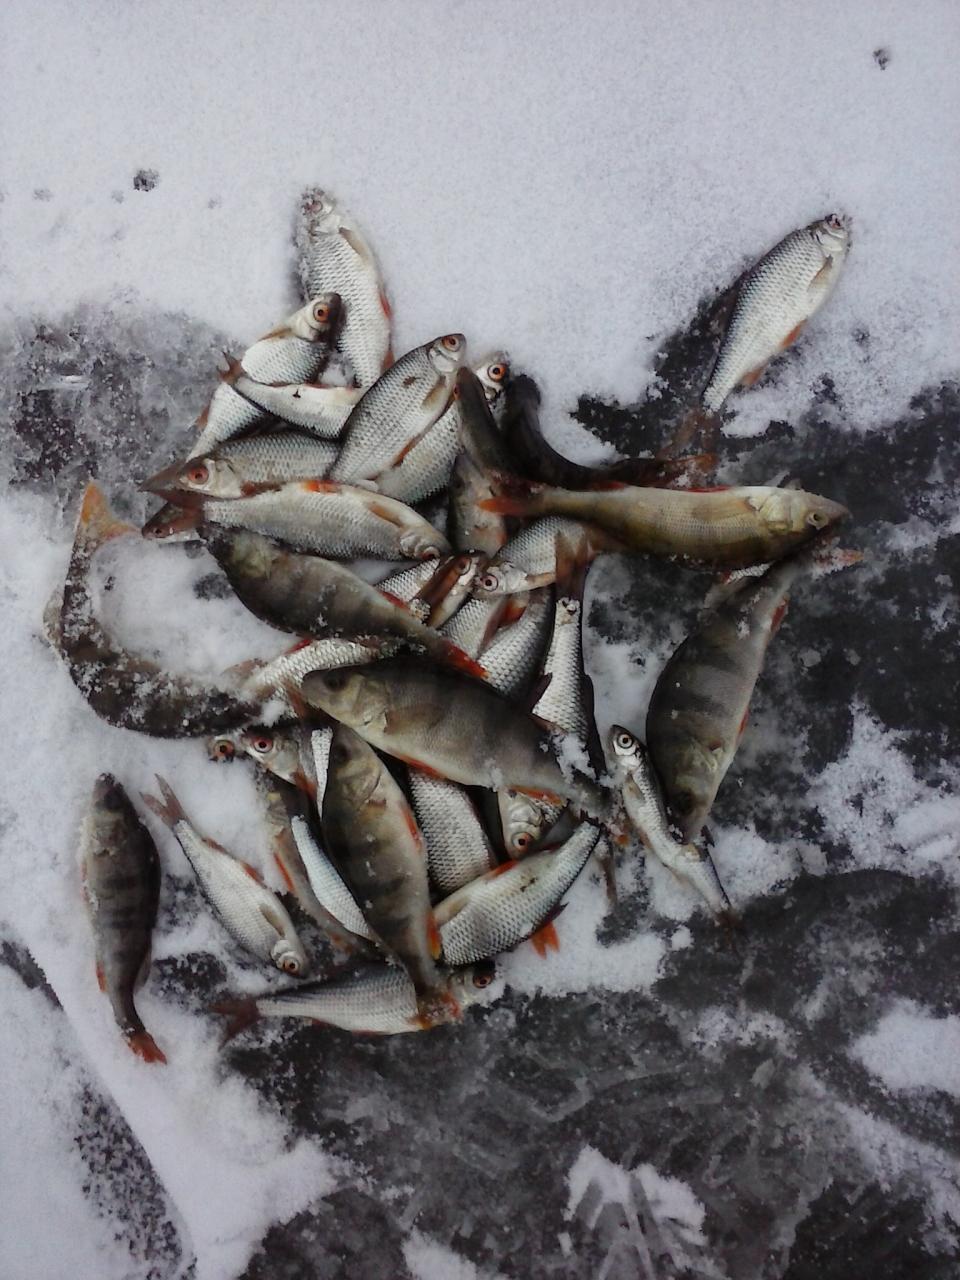  Сегодня с 9-30 до 15-00 ловилна маленькую светлую ... | Отчеты о рыбалке в Беларуси